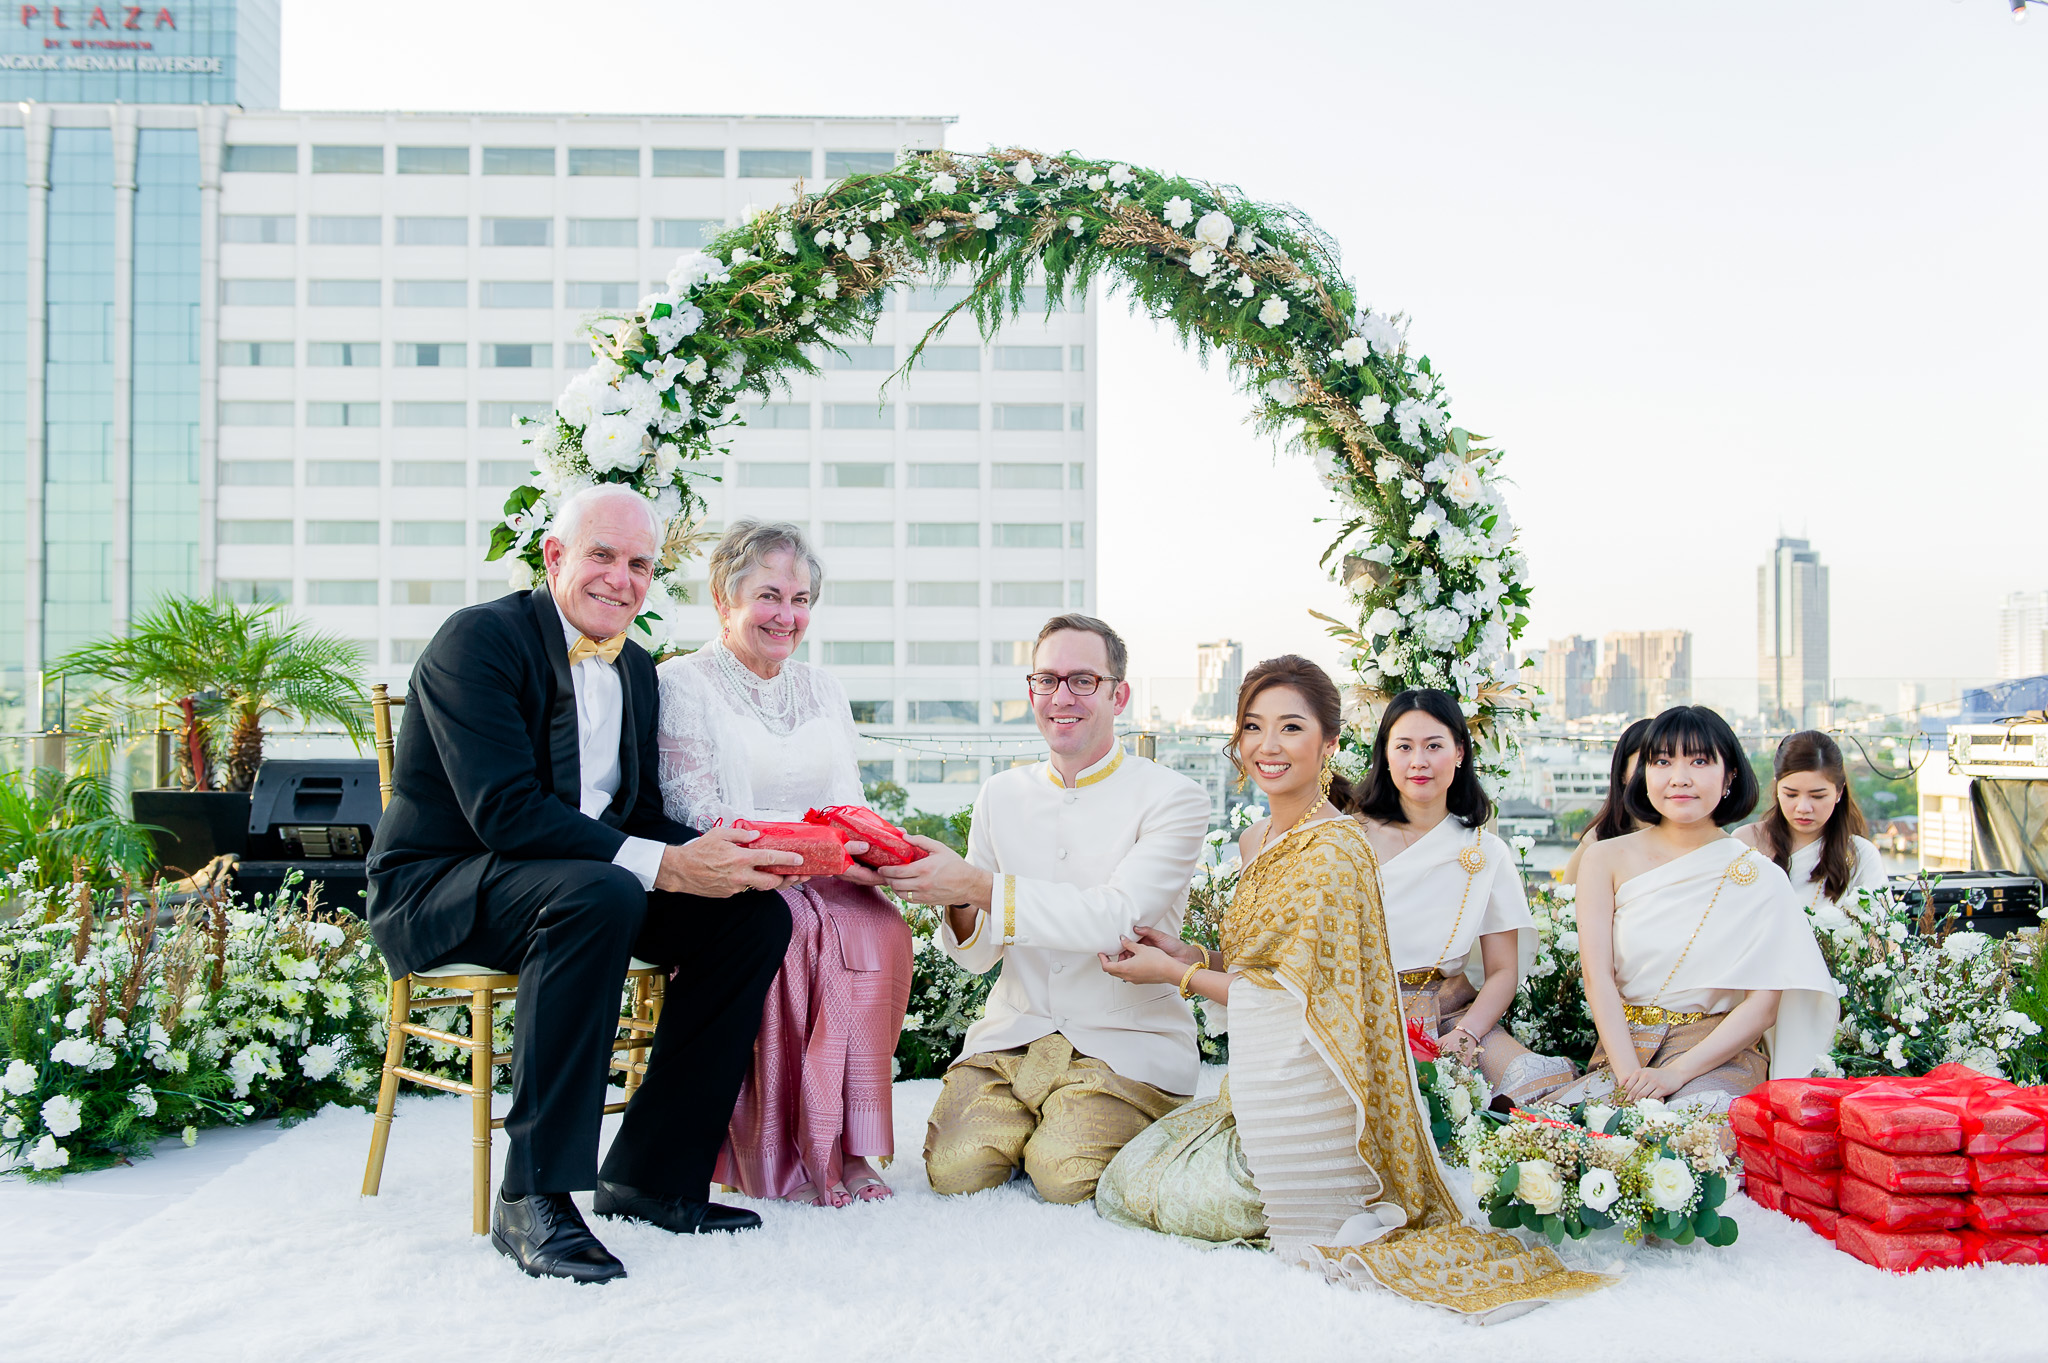 เคล็ดลับในการวางแผนงานแต่งงาน - Harmonize Wedding planner bangkok